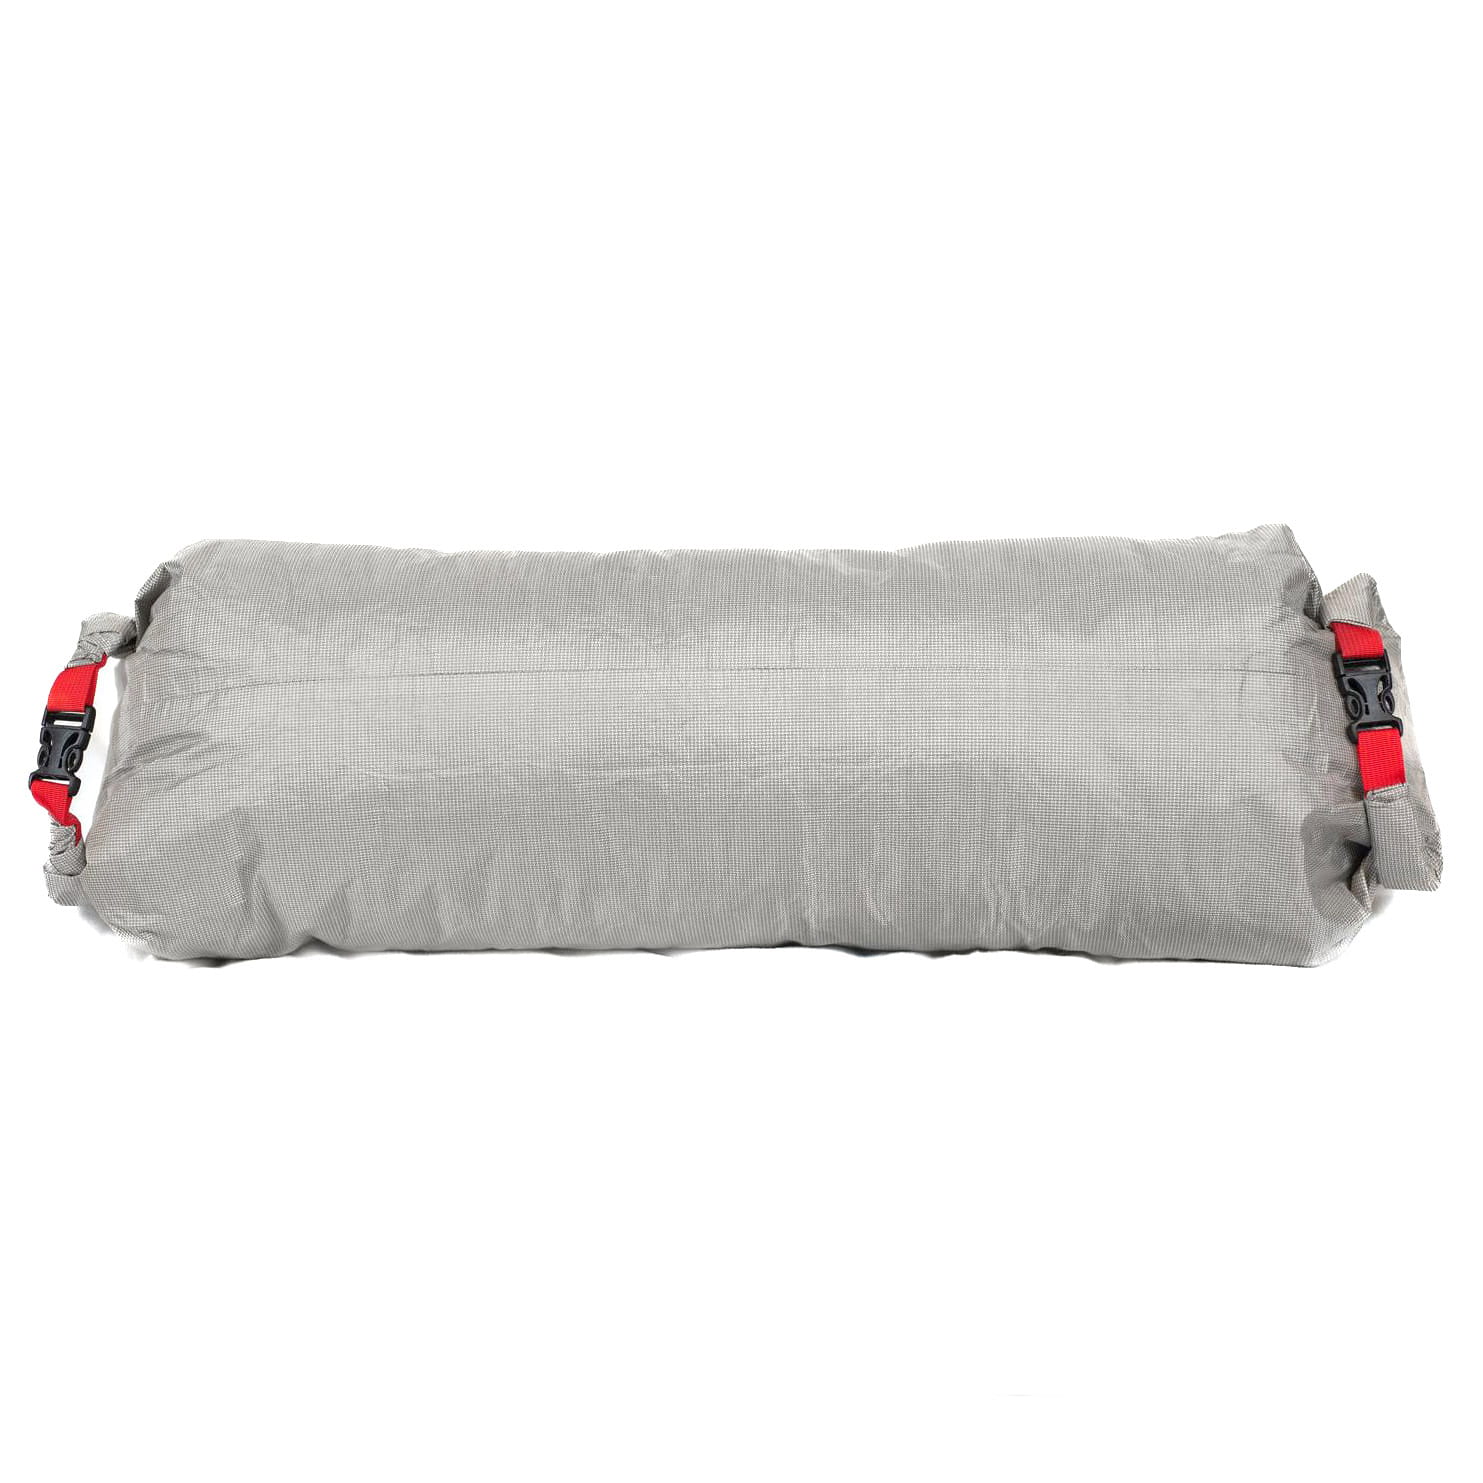 Revelate Designs Pronghorn Drybag Packsack